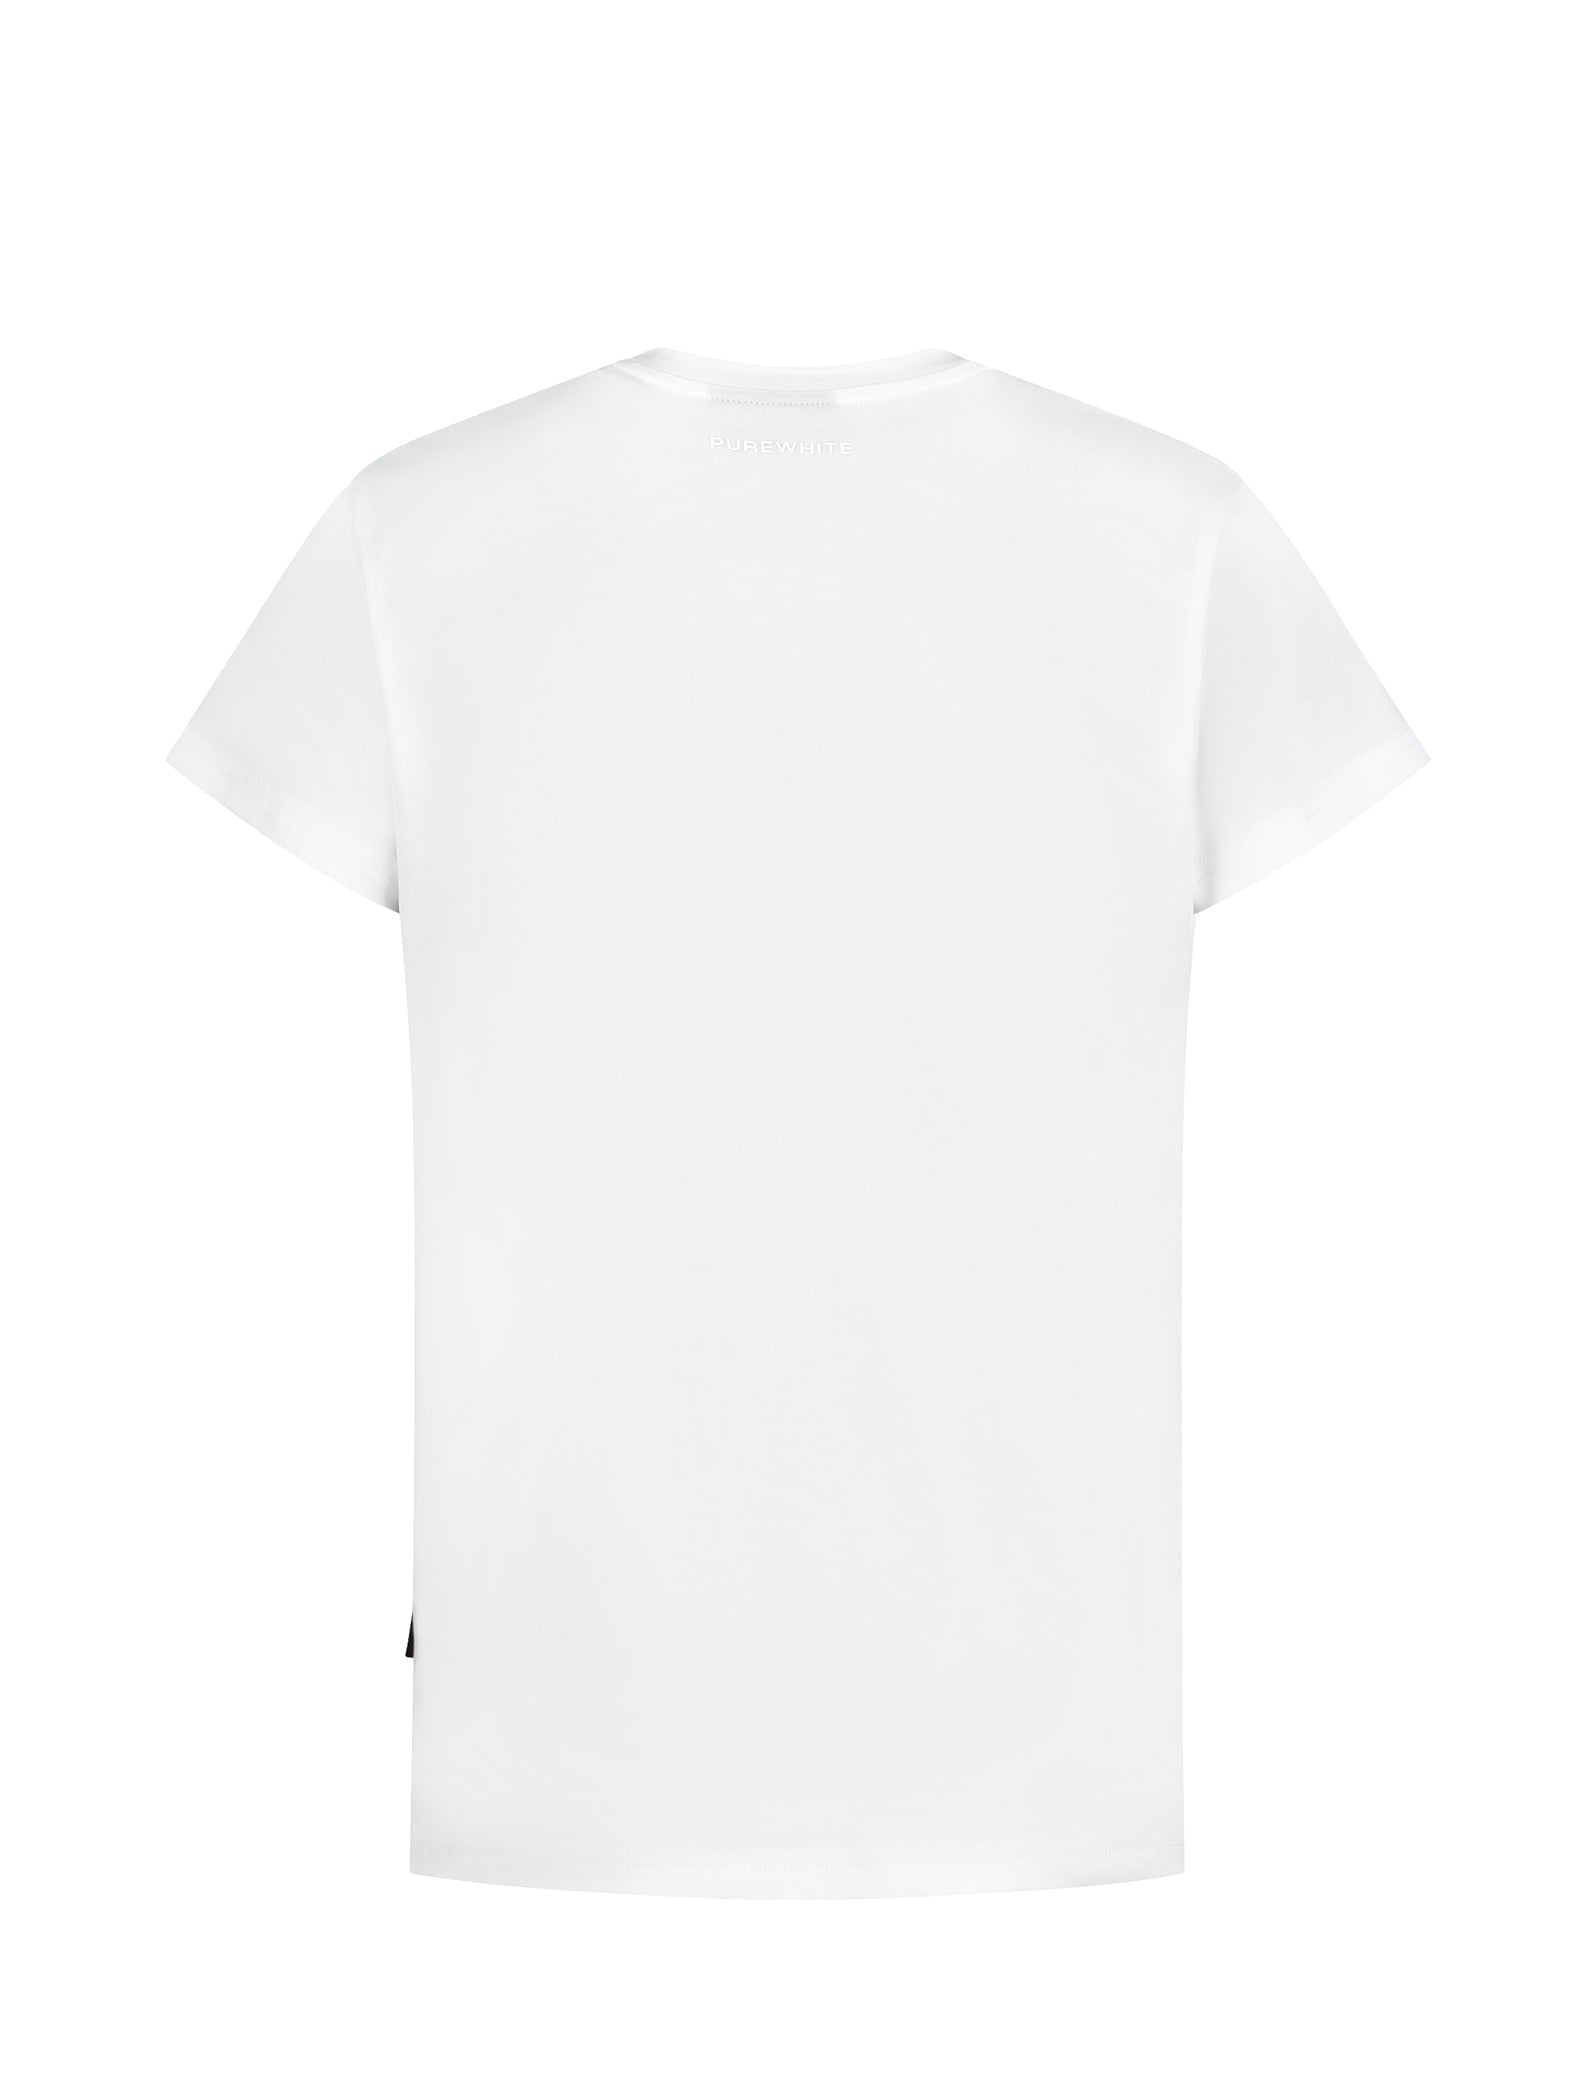 Jongens T-shirt White van Ballin in de kleur White in maat 176.